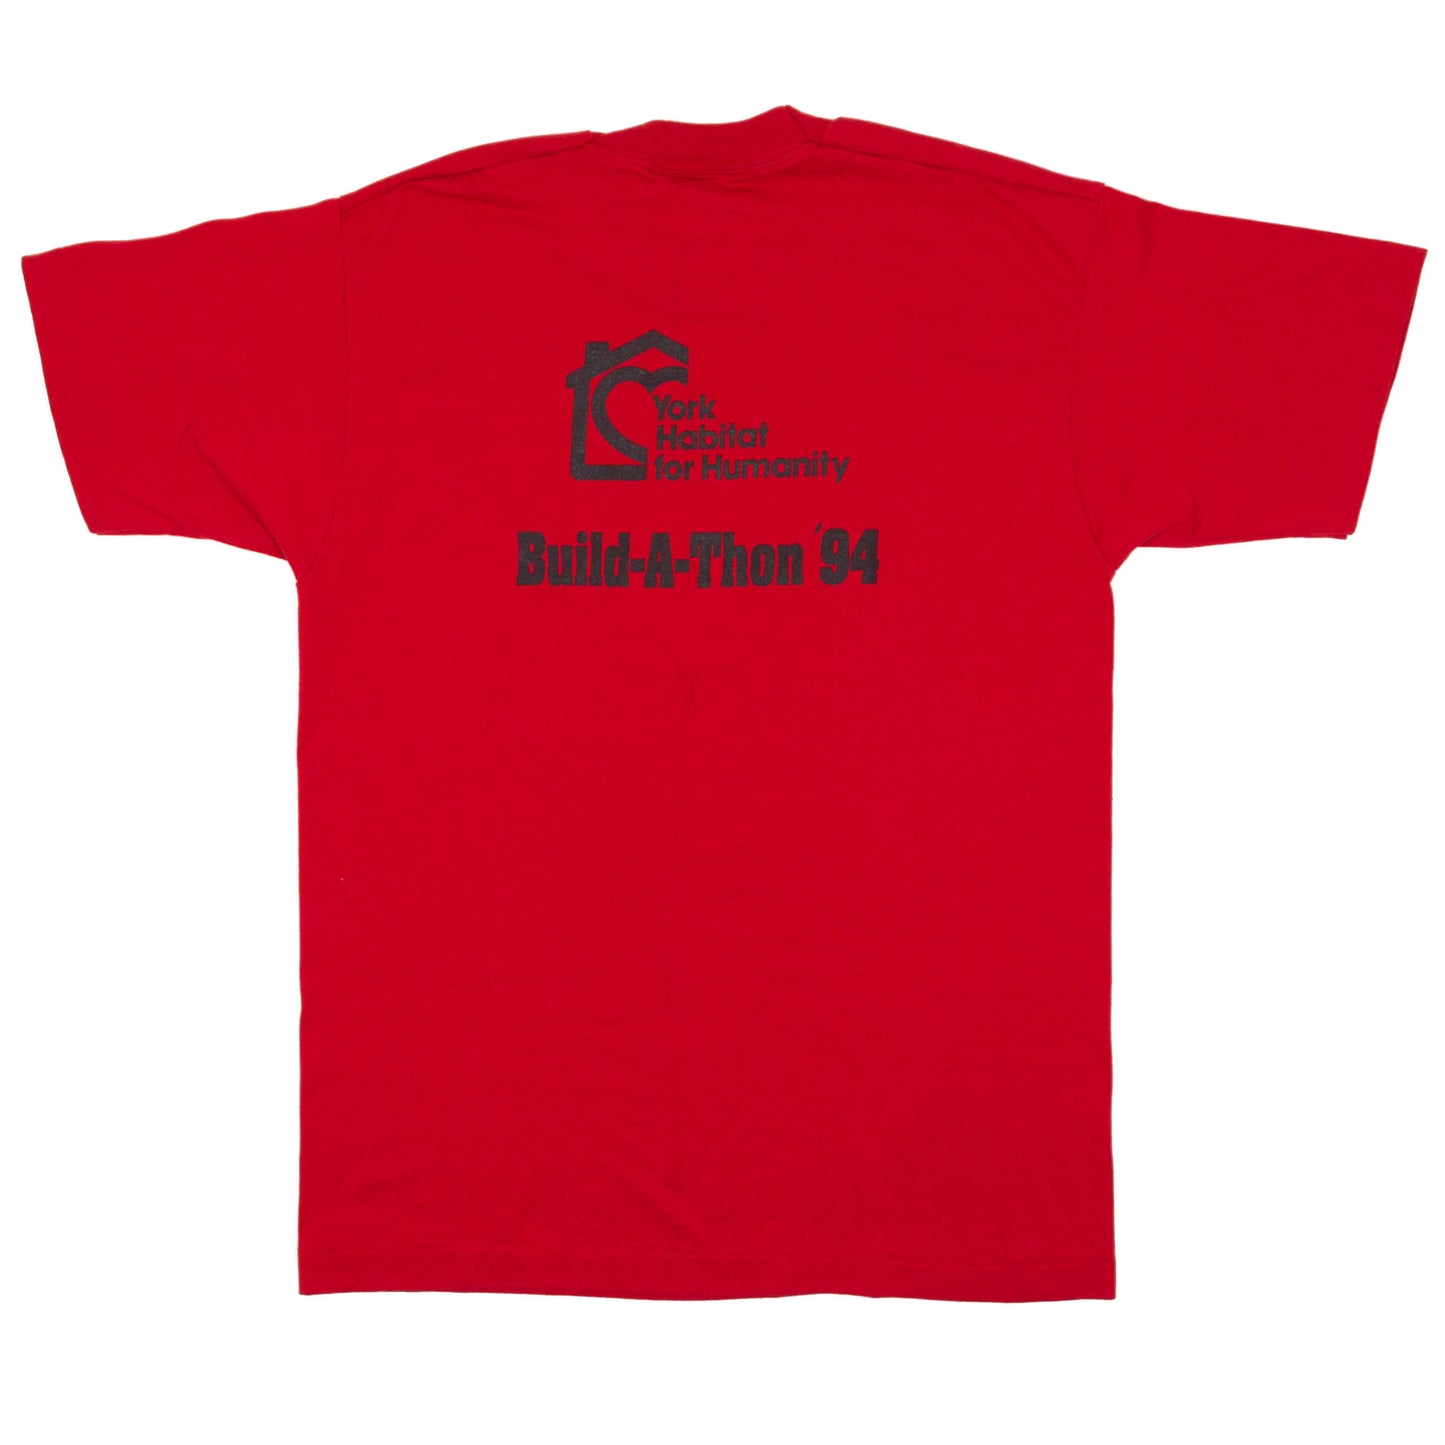 Vintage Build-A-Thon '94 T-shirt